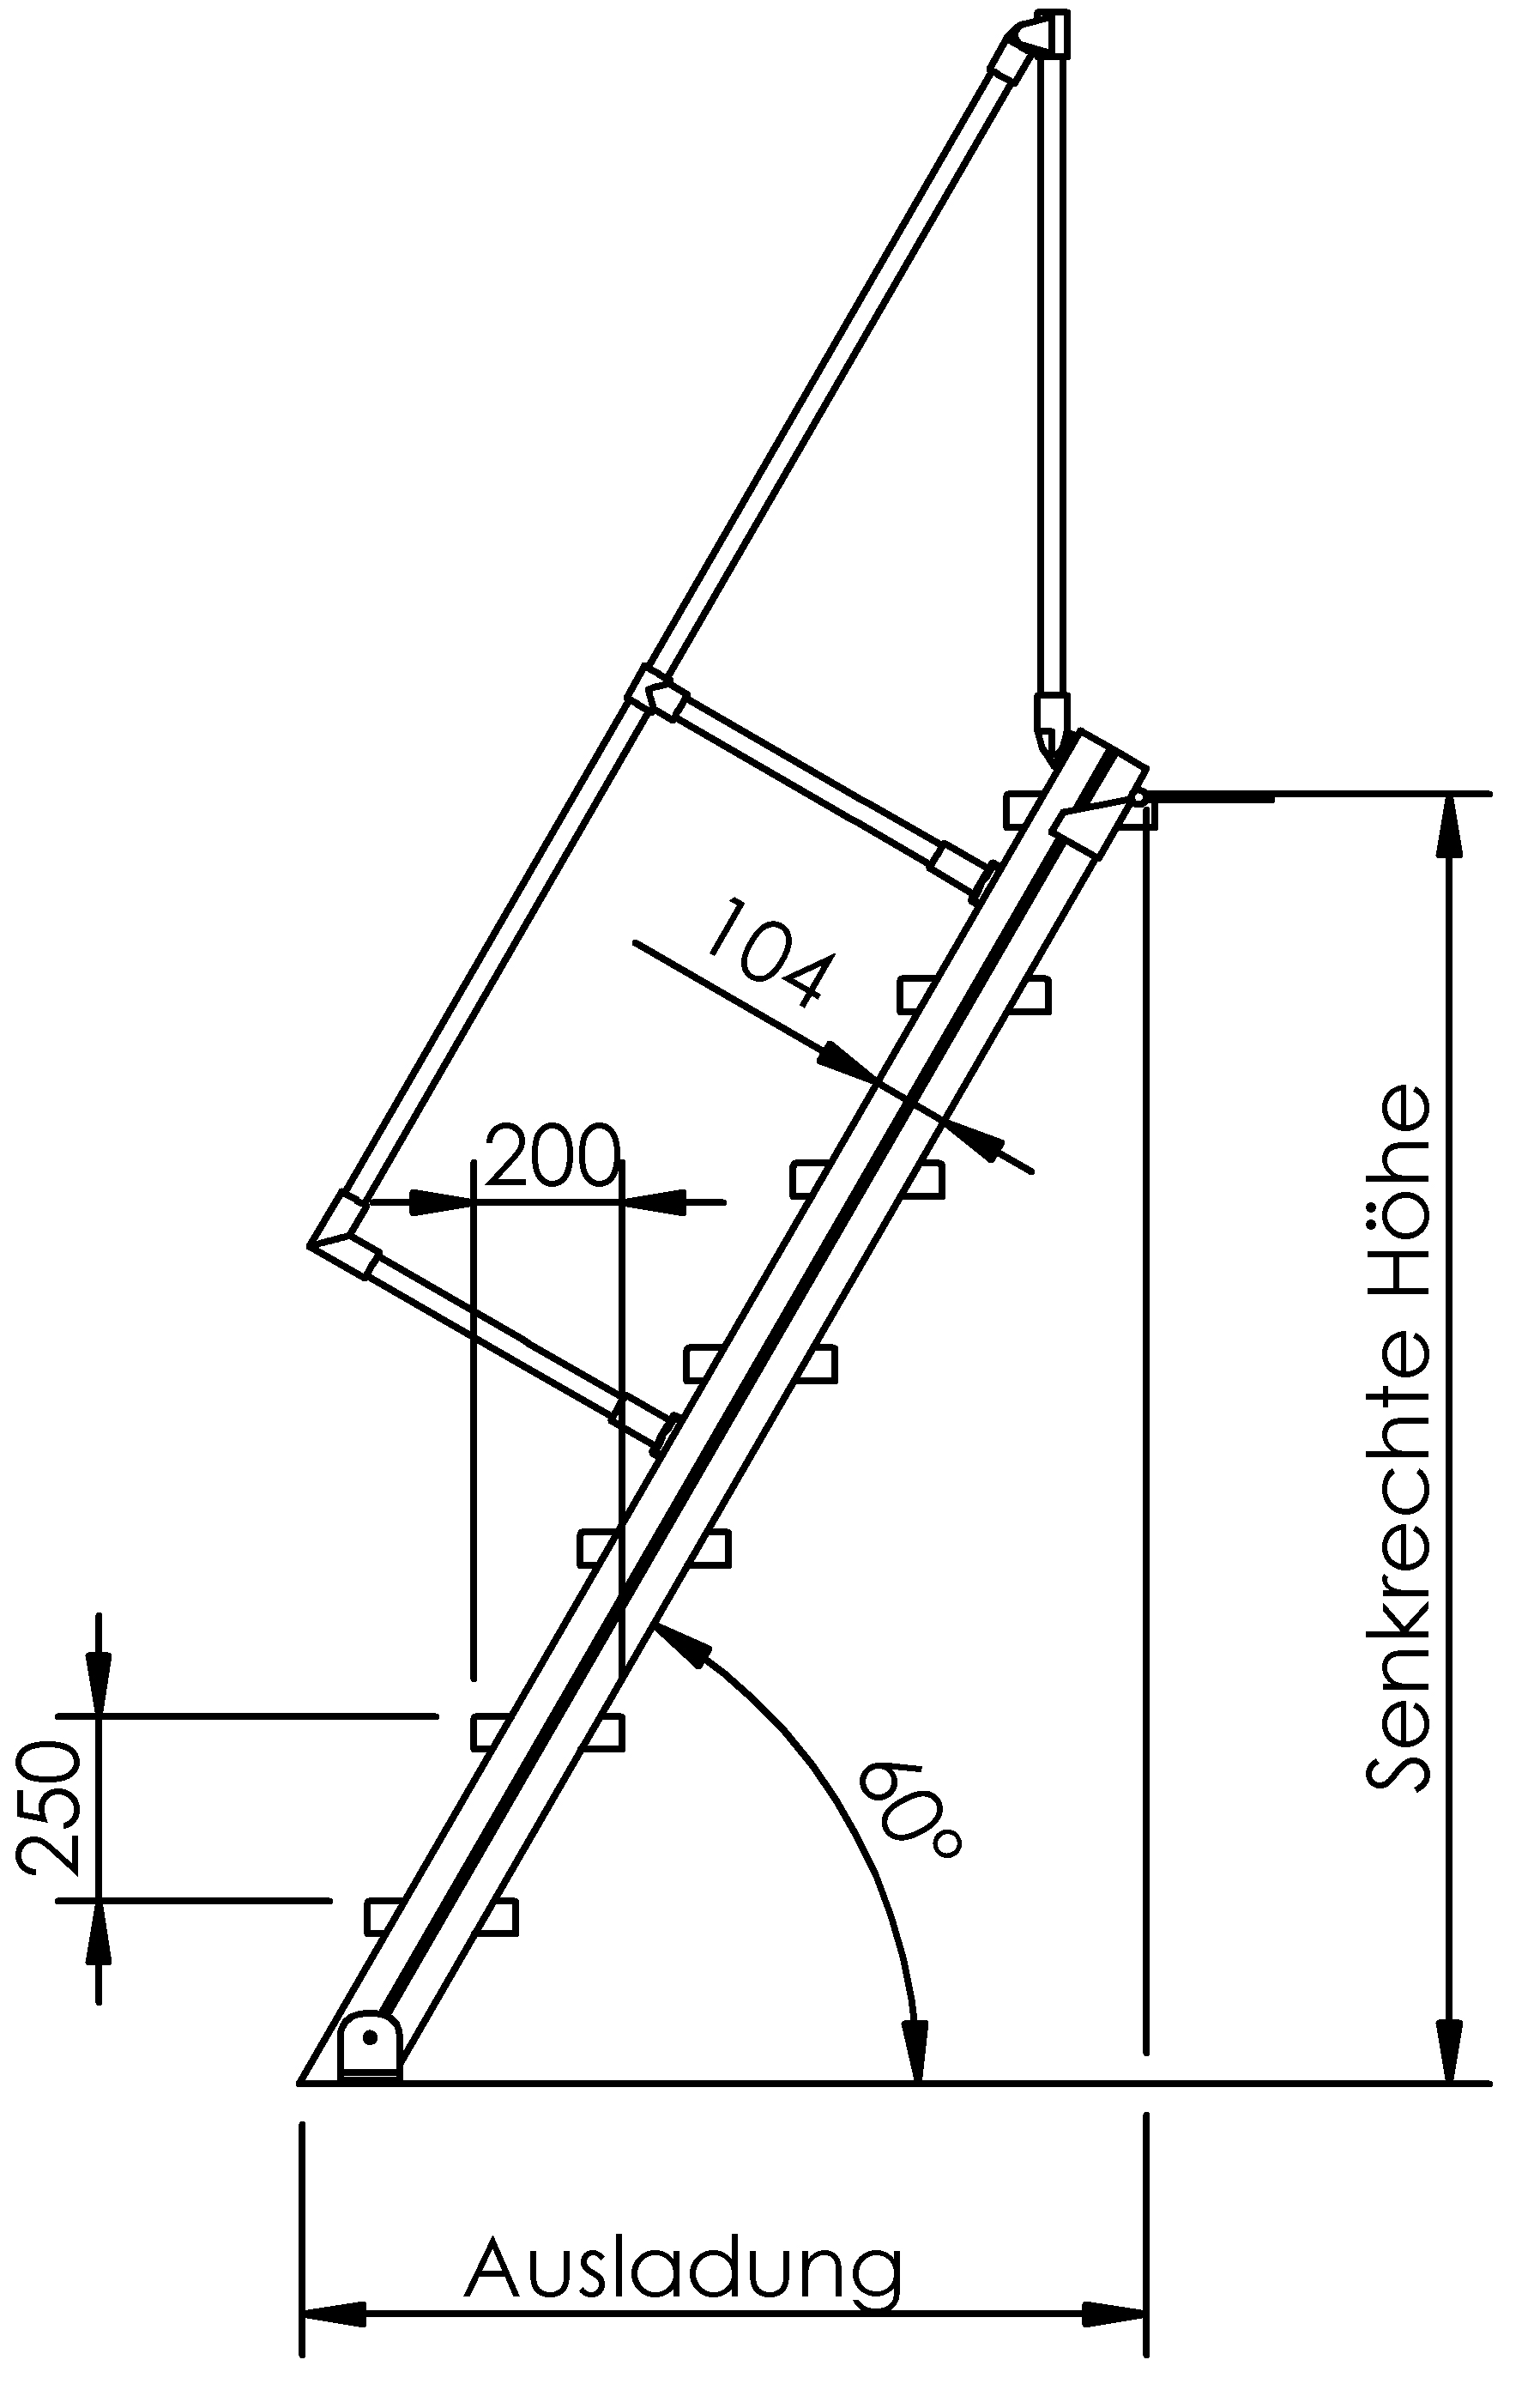 Selbstbautreppen, LW 600, Stufen aus Stahl, Neigung 60°